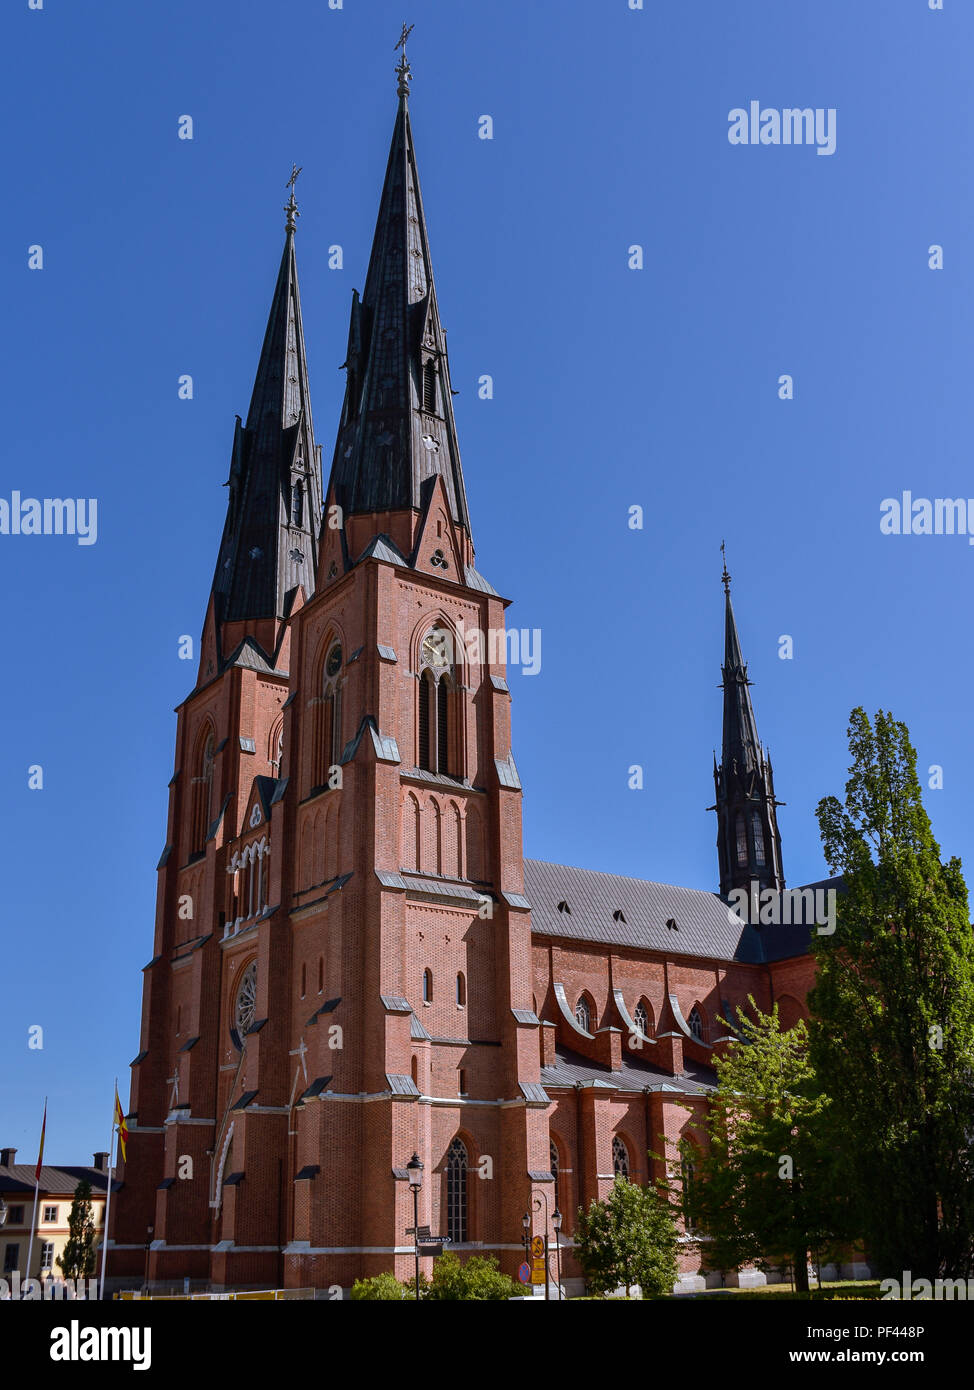 Uppsala Cathedral - Uppsala, Sweden Stock Photo